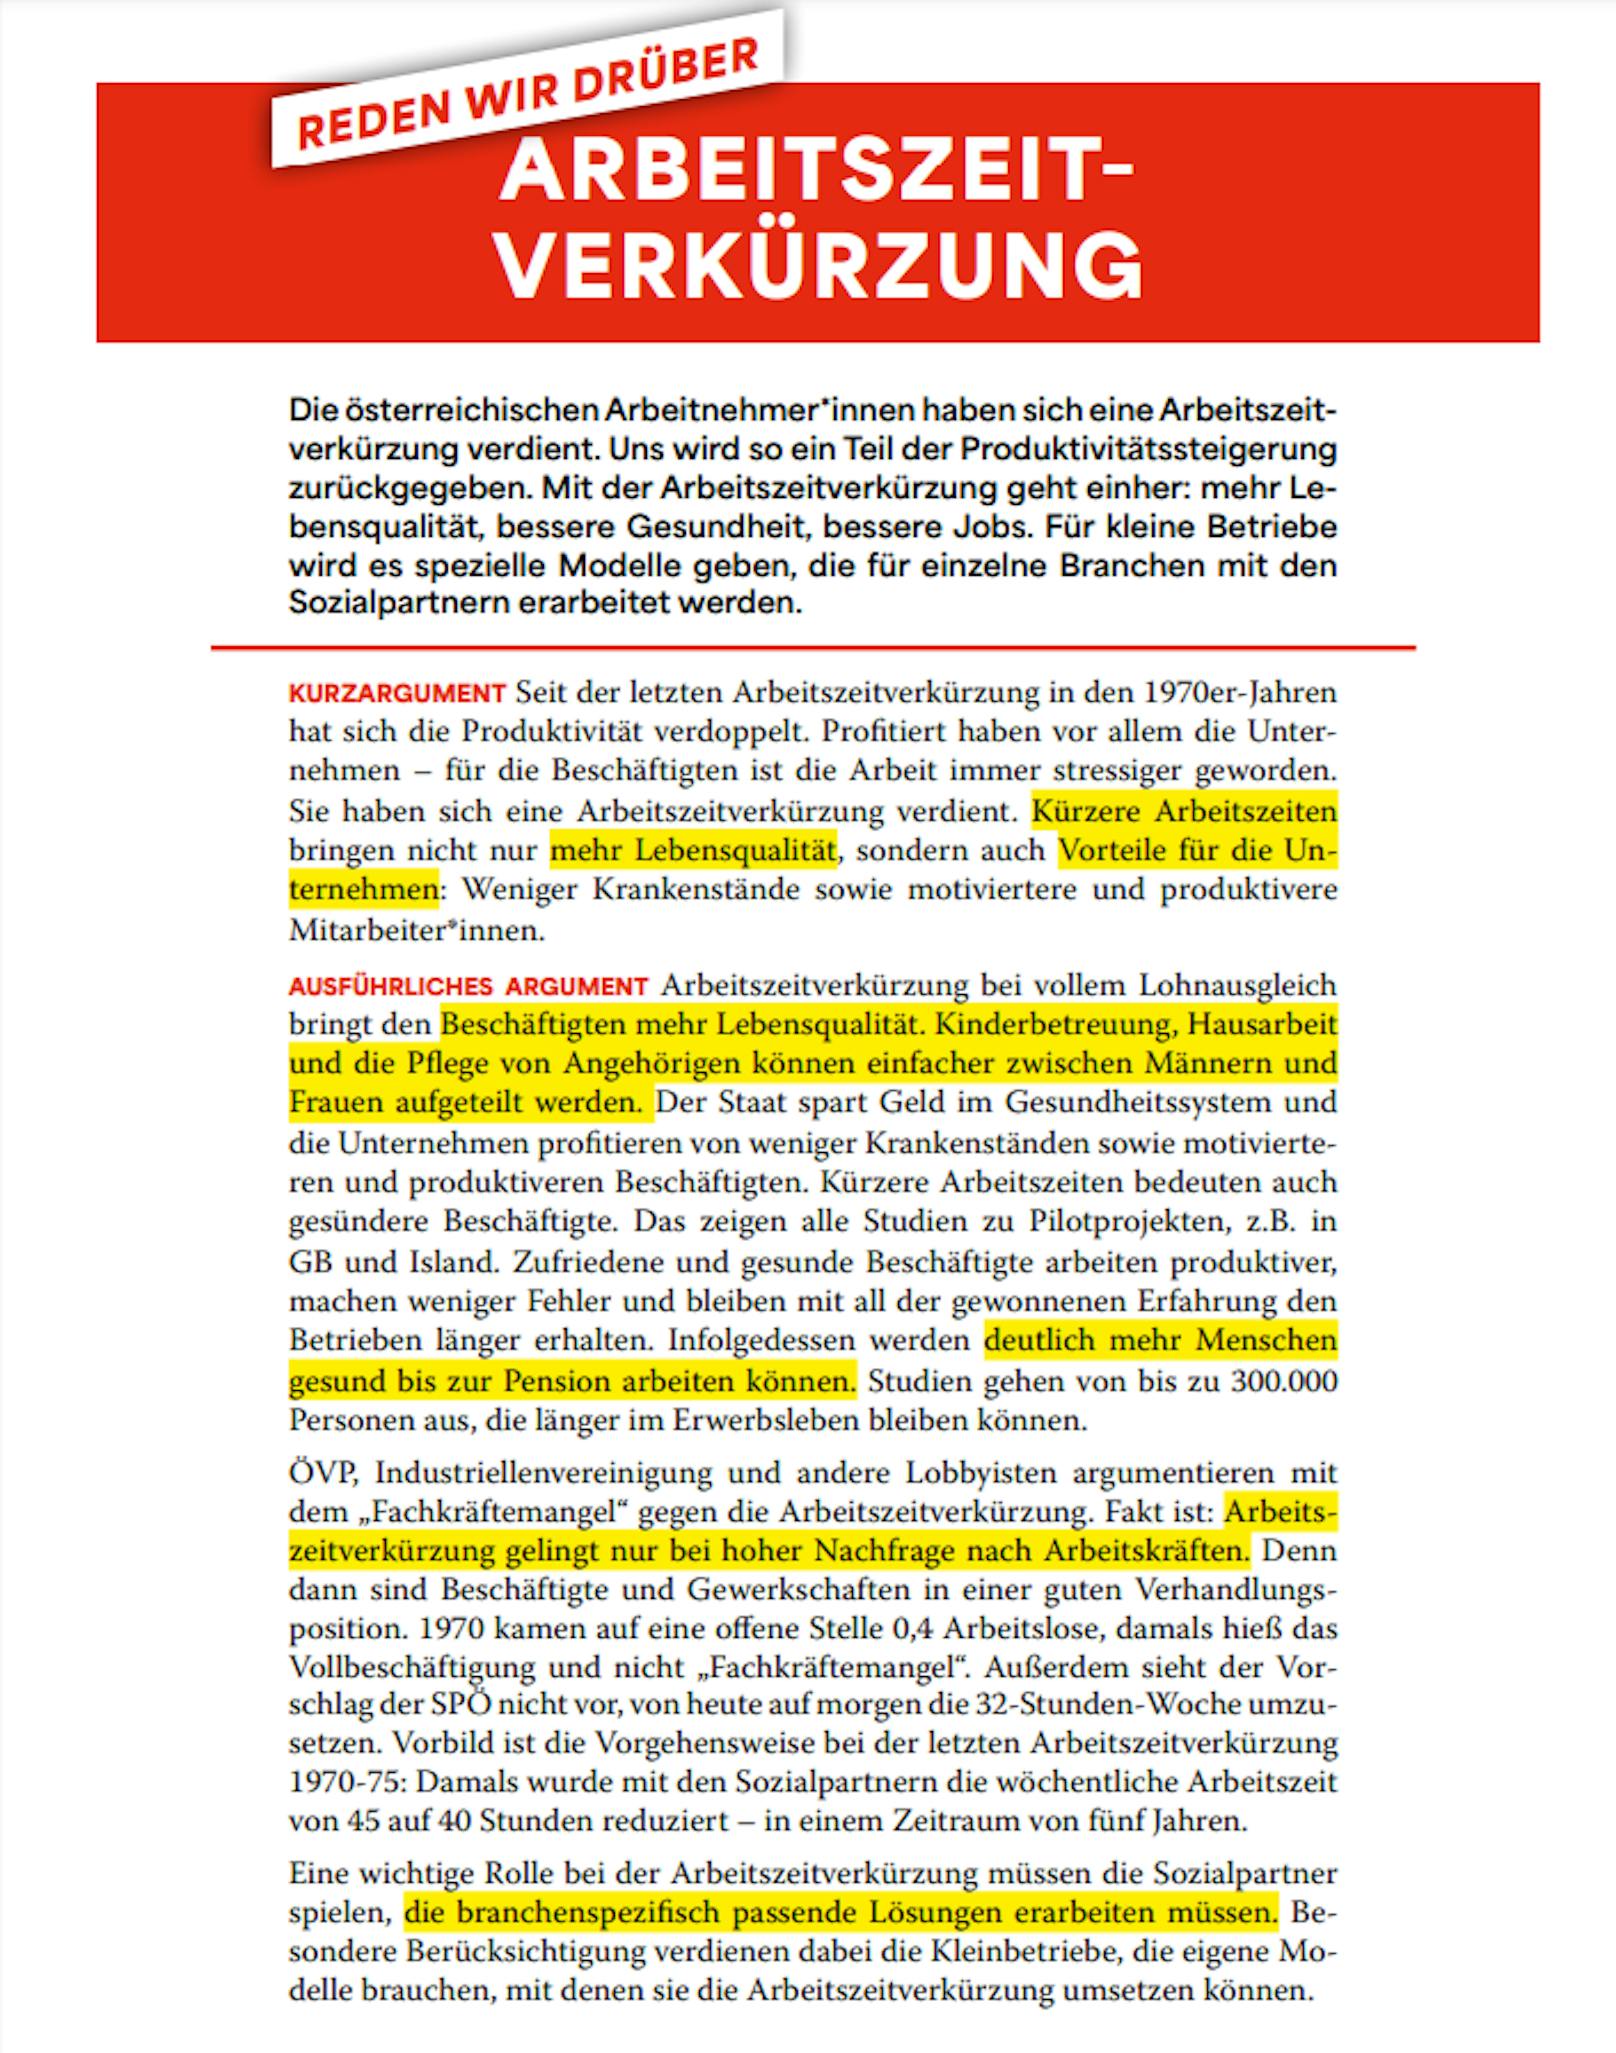 Solche Karten mit vorformulierten Meinungen verschickte die SPÖ an ihre Mitglieder – hier zum Thema Arbeitszeitverkürzung.